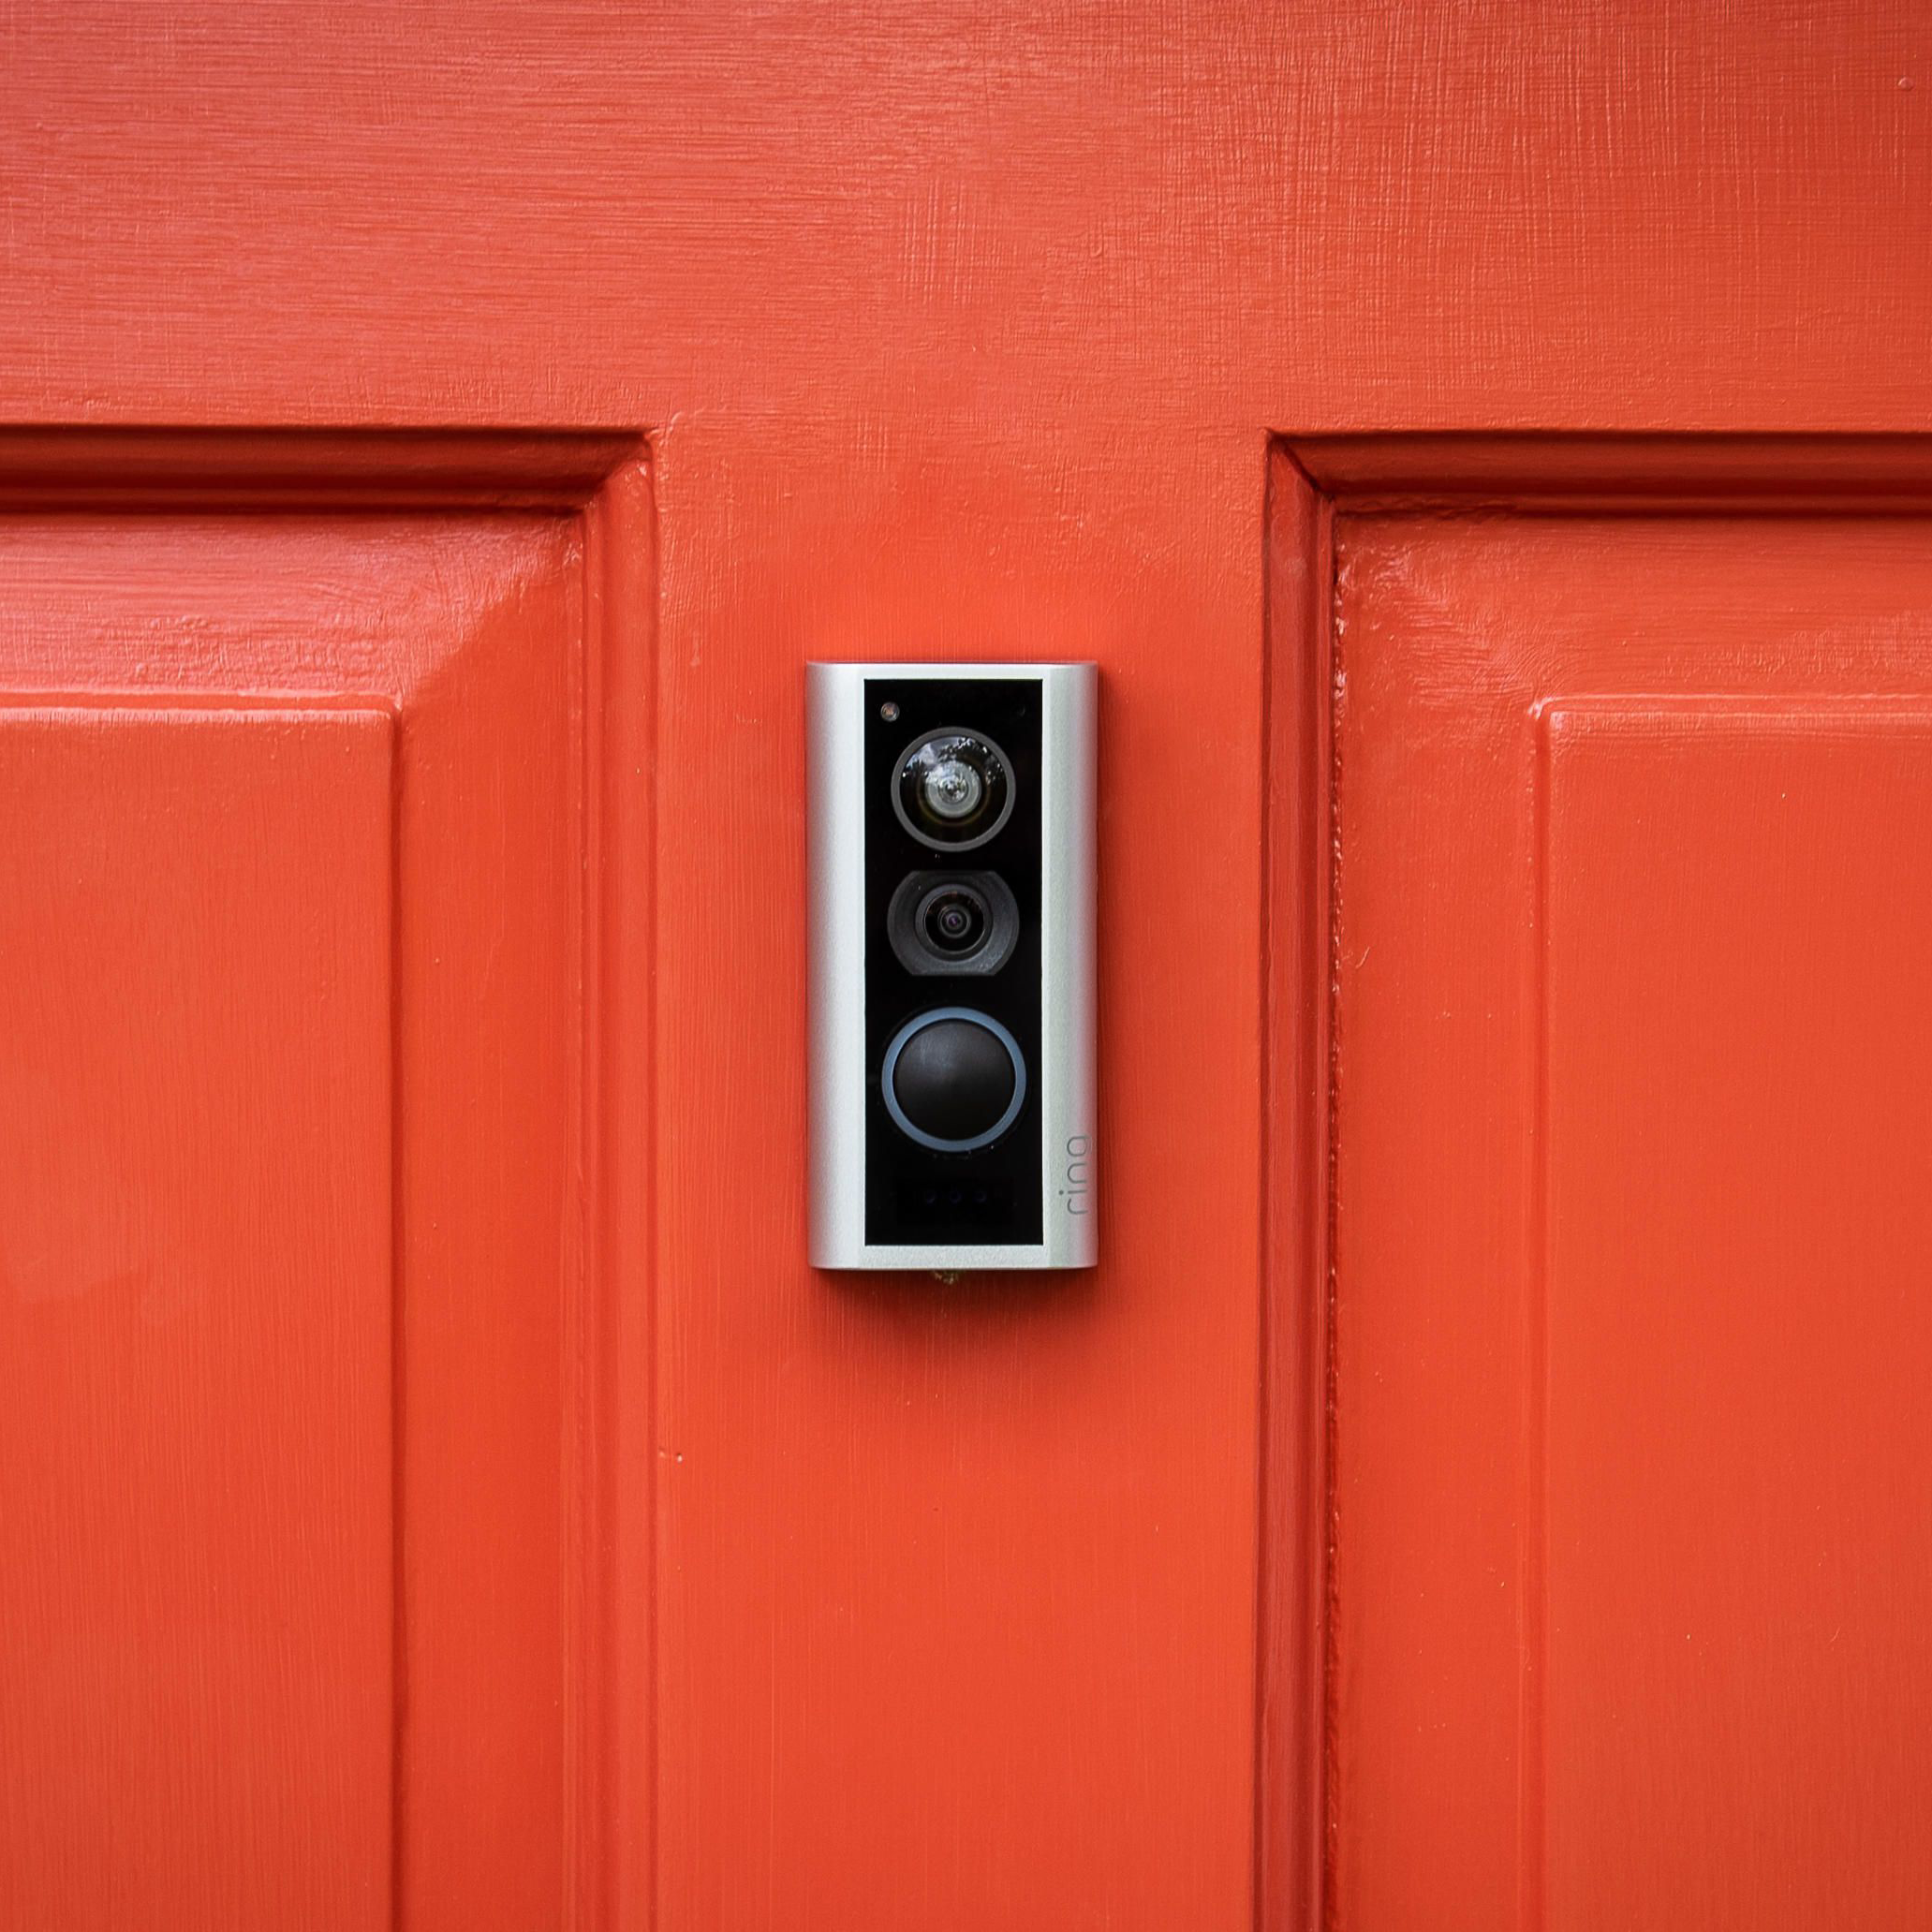 Door mounted video doorbell